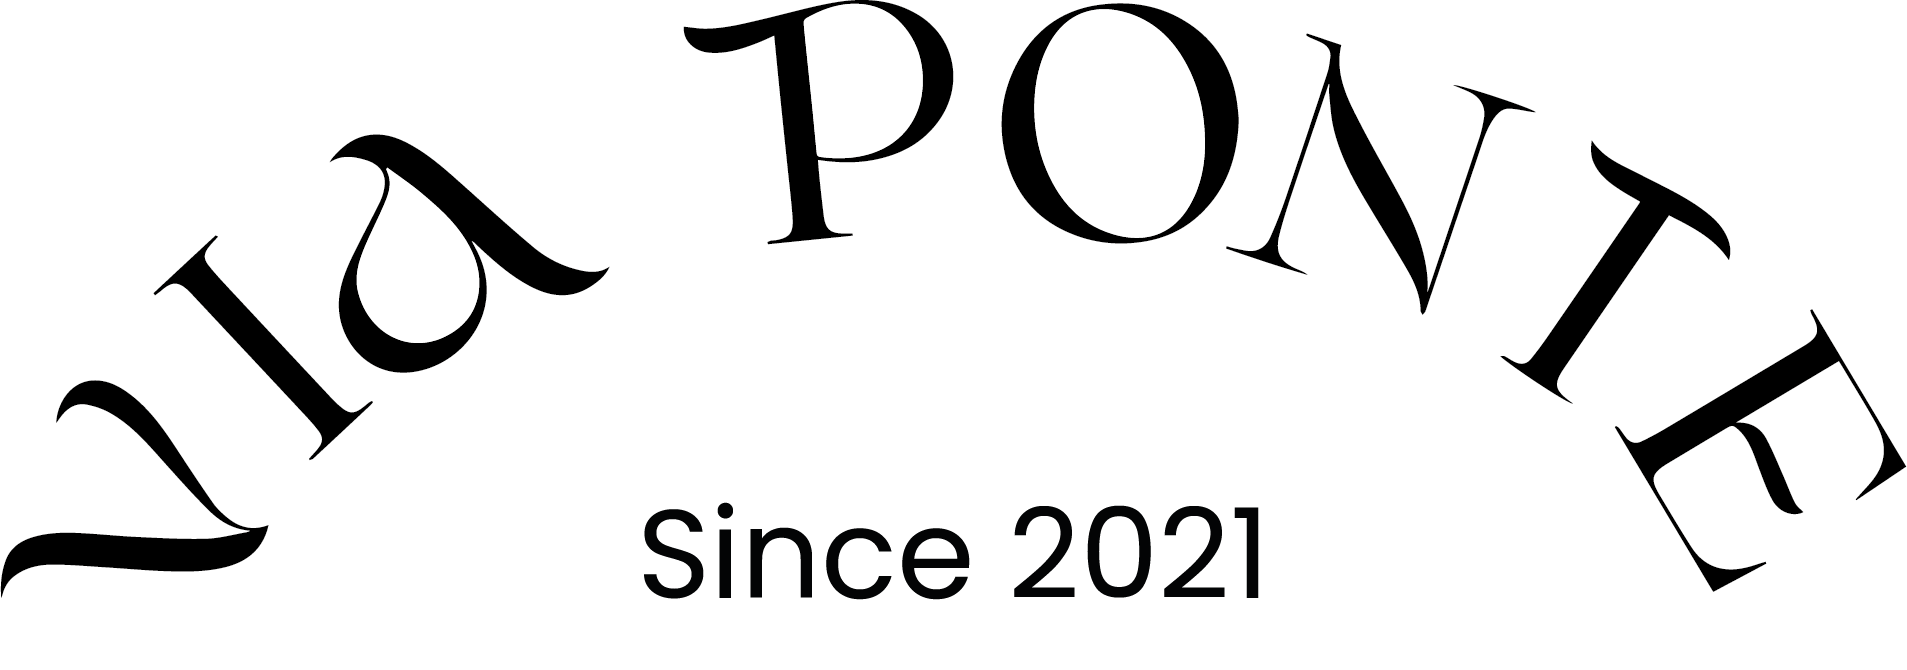 een zwart-wit logo voor via ponte 02